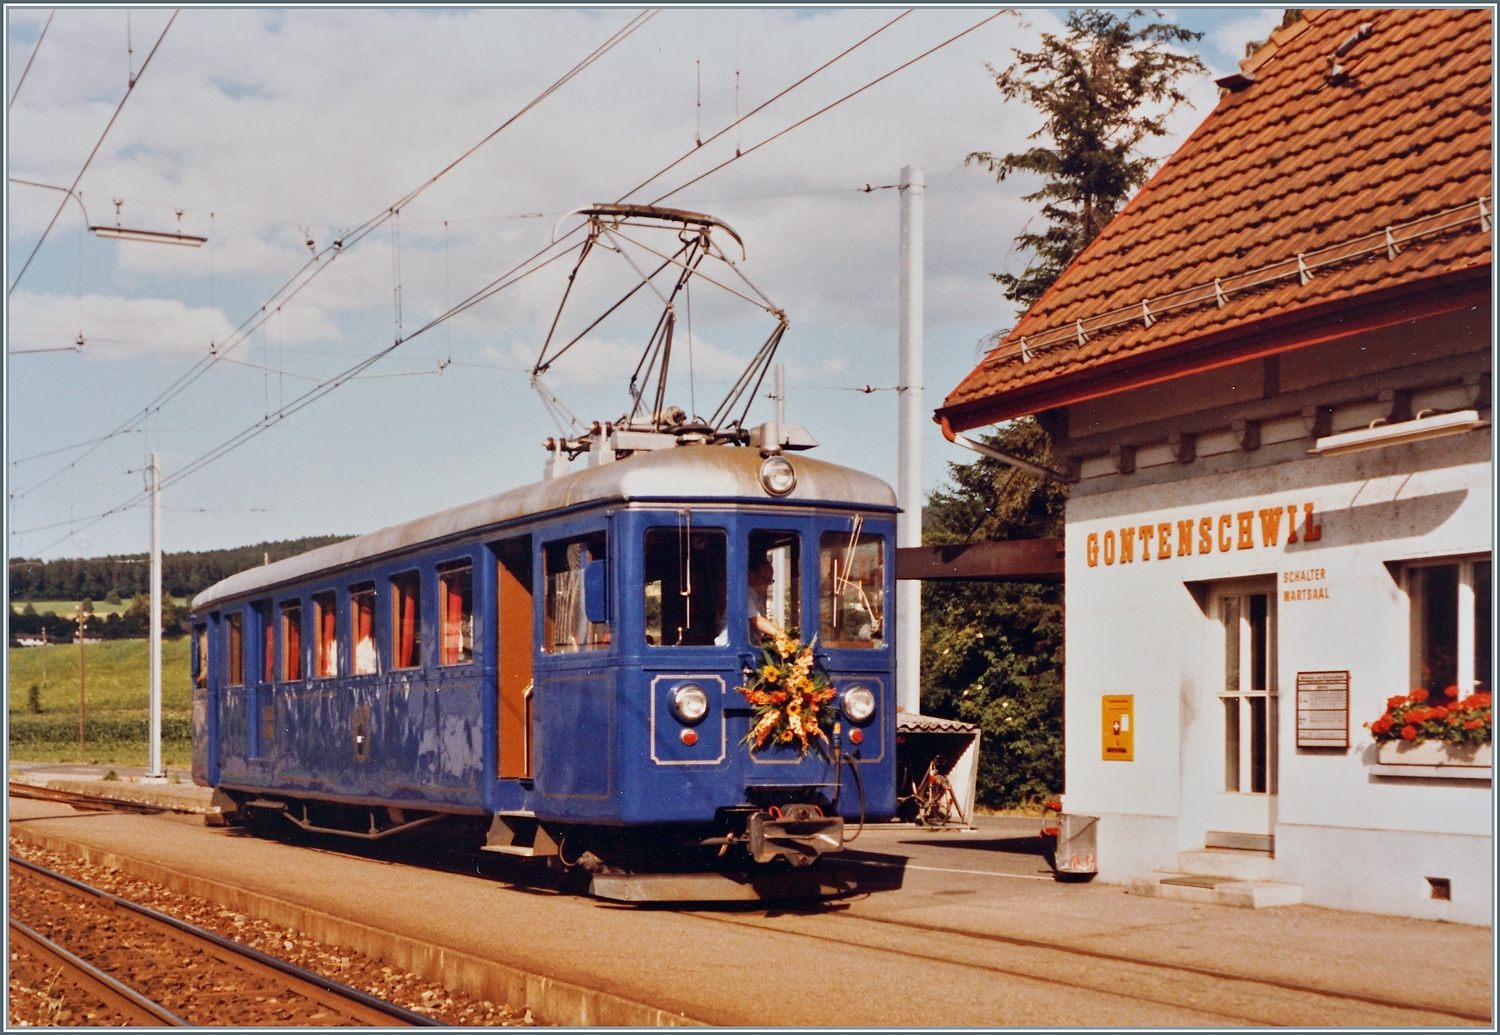 In Gontenschwil steht der WSB Bse 4/4 116. Der edle Salontriebwagen hat eine interessante Geschichte hinter sich, die ich zeitlich weit übers Bild hinaus bis in unser Tage kurz skizieren möchte: 

1901 wird der Triebwagen als CFe 2/4 N° 3 bei der AS (Aarau - Schöftlandbahn) in Betrieb genommen. Damals besass der Treibwagen Lyrastromabnehmer. Drei Jahre erhält der Triebwagen infolge der Zusammenarbeit mit der WTB (Wyentalbahn) die Nummer 16. 1932 bekommt der Triebwagen zwei weitere Antriebsmotoren und verkehrt nun als CFe 4/4 N° 16. Nach einem Zusammenstoss mit einem Güterzug 1950 wird der Triebwagen umfassend umgebaut und kommt 1952 mit einem neuen, längeren und breiteren Wagenkasten wieder in Betrieb. Durch die  Klassenreform  1959 erhält der Triebwagen die Bezeichnung BDe 4/4 16. 1962 bekommt der Triebwagen neue Drehgestelle, ein neues Getriebe und eine Schienenbremse. Mit 2 528 877 Km Laufleistung auf dem Tacho beginnt ein neuer Abschnitt in der Geschichte des Triebwagens: Nach dem Umbau in der WSB Werkstätte wird der Triebwagen als Salontriebwagen Bse 4/4 116 in Betrieb genommen und seht nun für Sonderfahrten zur Verfügung. Nach dreissig Jahren dann das scheinbare Ende: Der Bse 4/4 116 wurde 2012 ausser Dienst gestellt und zur Verschrottung abtransportiert. Aber seit 2019 kümmert sich der Verein „Pro Salonwagen WSB“ um den WSB Bse 4/4 116. Der Verein brachte den Salontriebwagen zur AVA zurück, wo er aufgearbeitet werden soll.  

Das Analogbild entstand vor gut vierzig Jahren am 14. Juli 1984 